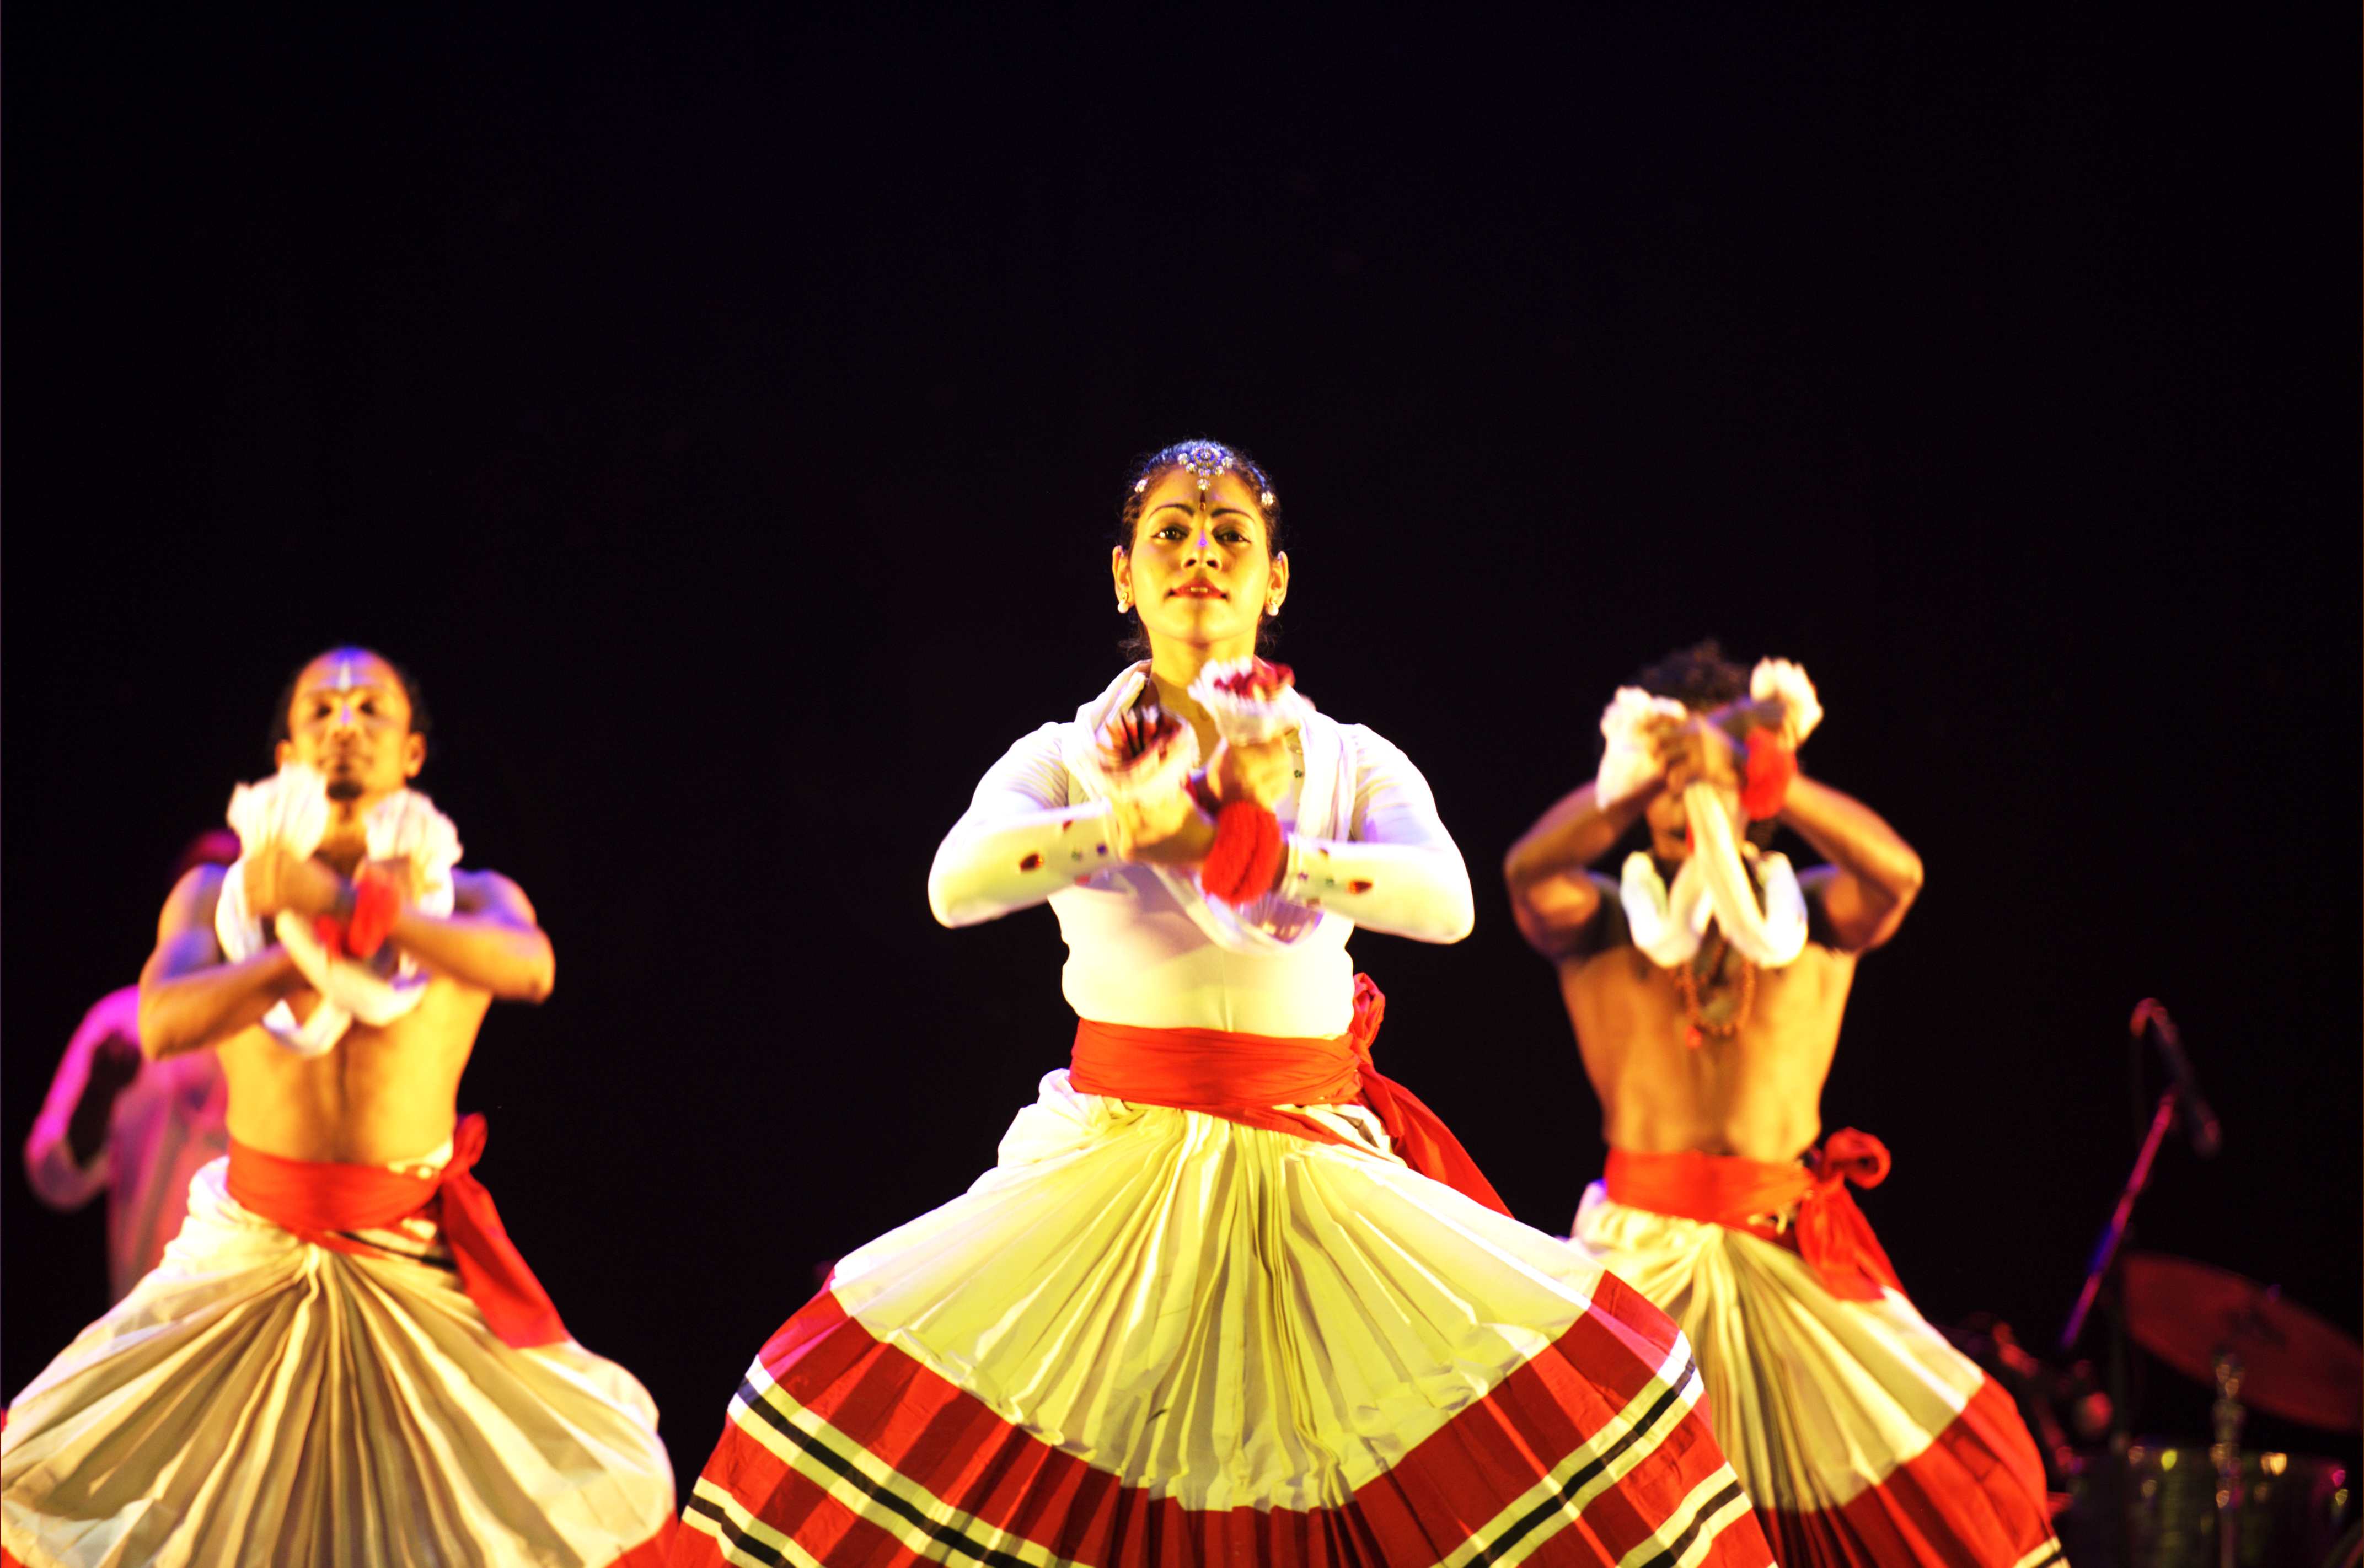 【全能舞者】印度舞神Bhanupriya古典舞蹈欣赏 Karthika Pournami_哔哩哔哩 (゜-゜)つロ 干杯~-bilibili